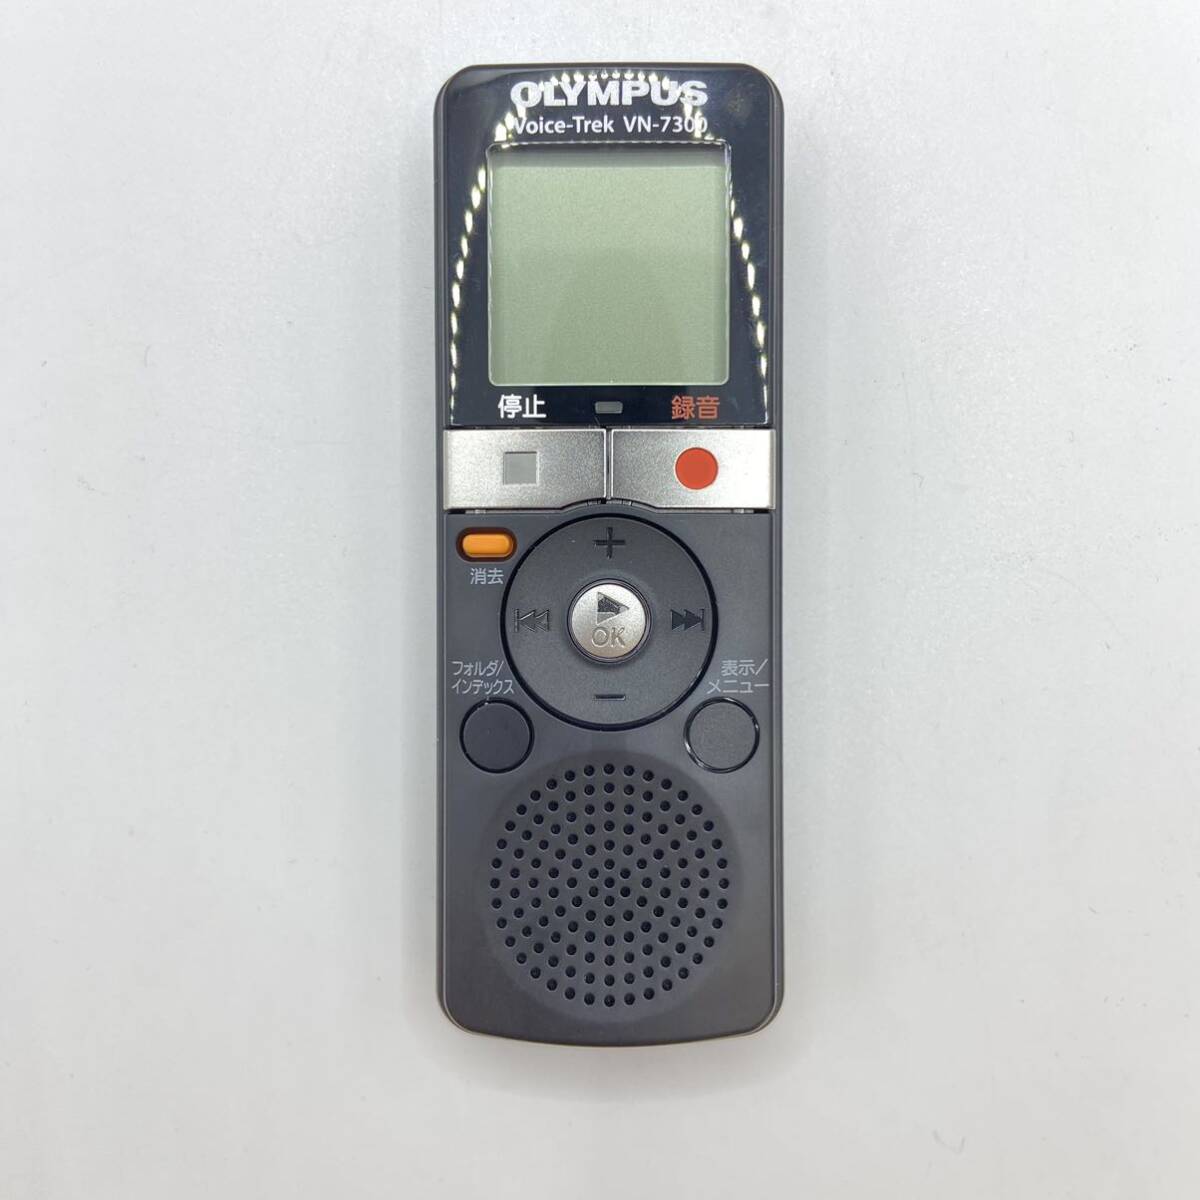  Olympus OLYMPUS Voice-Trek voice Trek VN-7300 voice recorder 